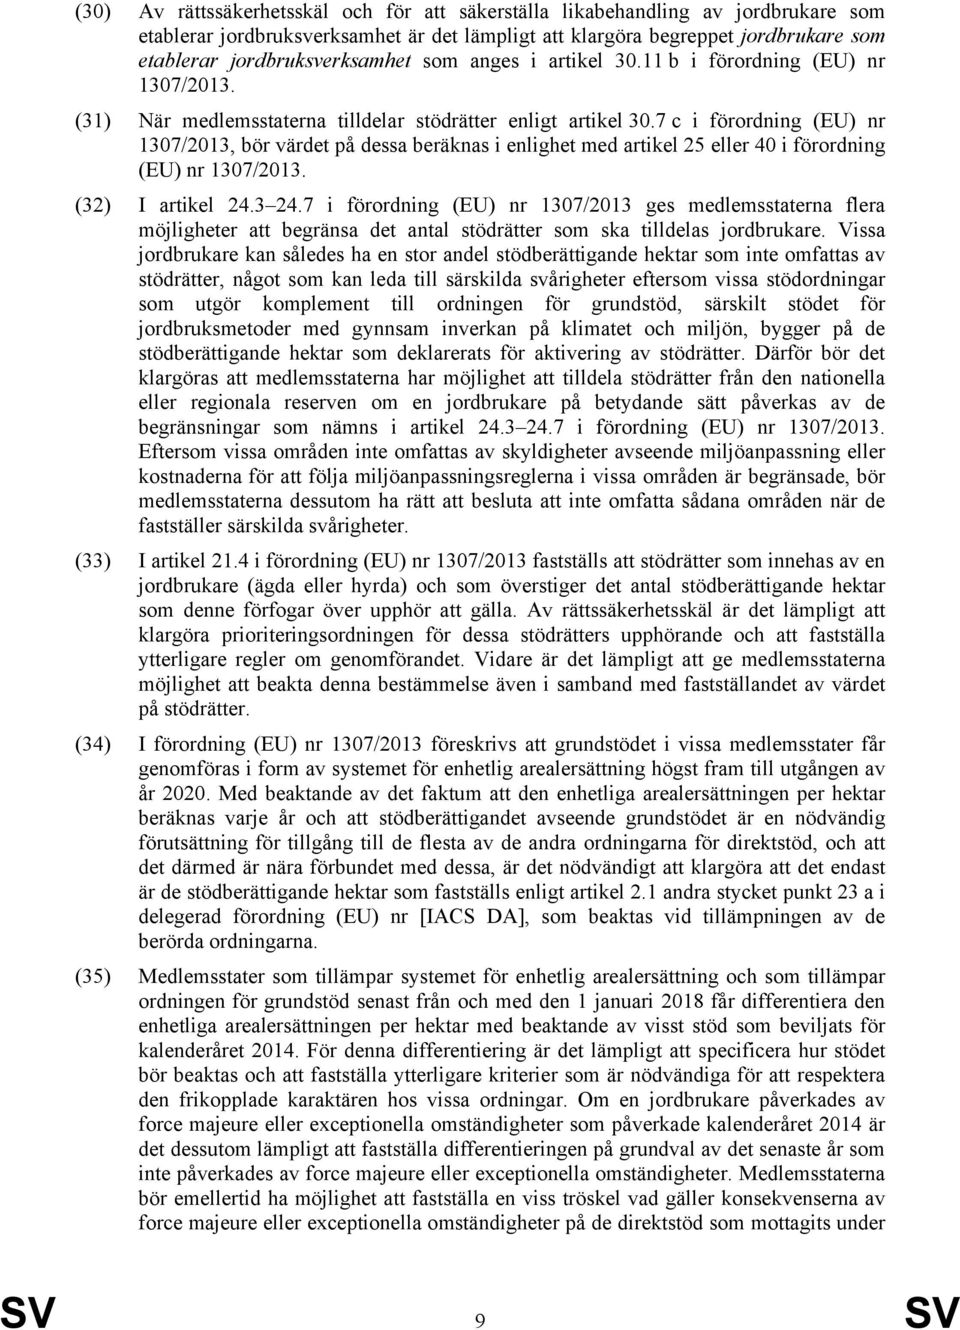 7 c i förordning (EU) nr 1307/2013, bör värdet på dessa beräknas i enlighet med artikel 25 eller 40 i förordning (EU) nr 1307/2013. (32) I artikel 24.3 24.